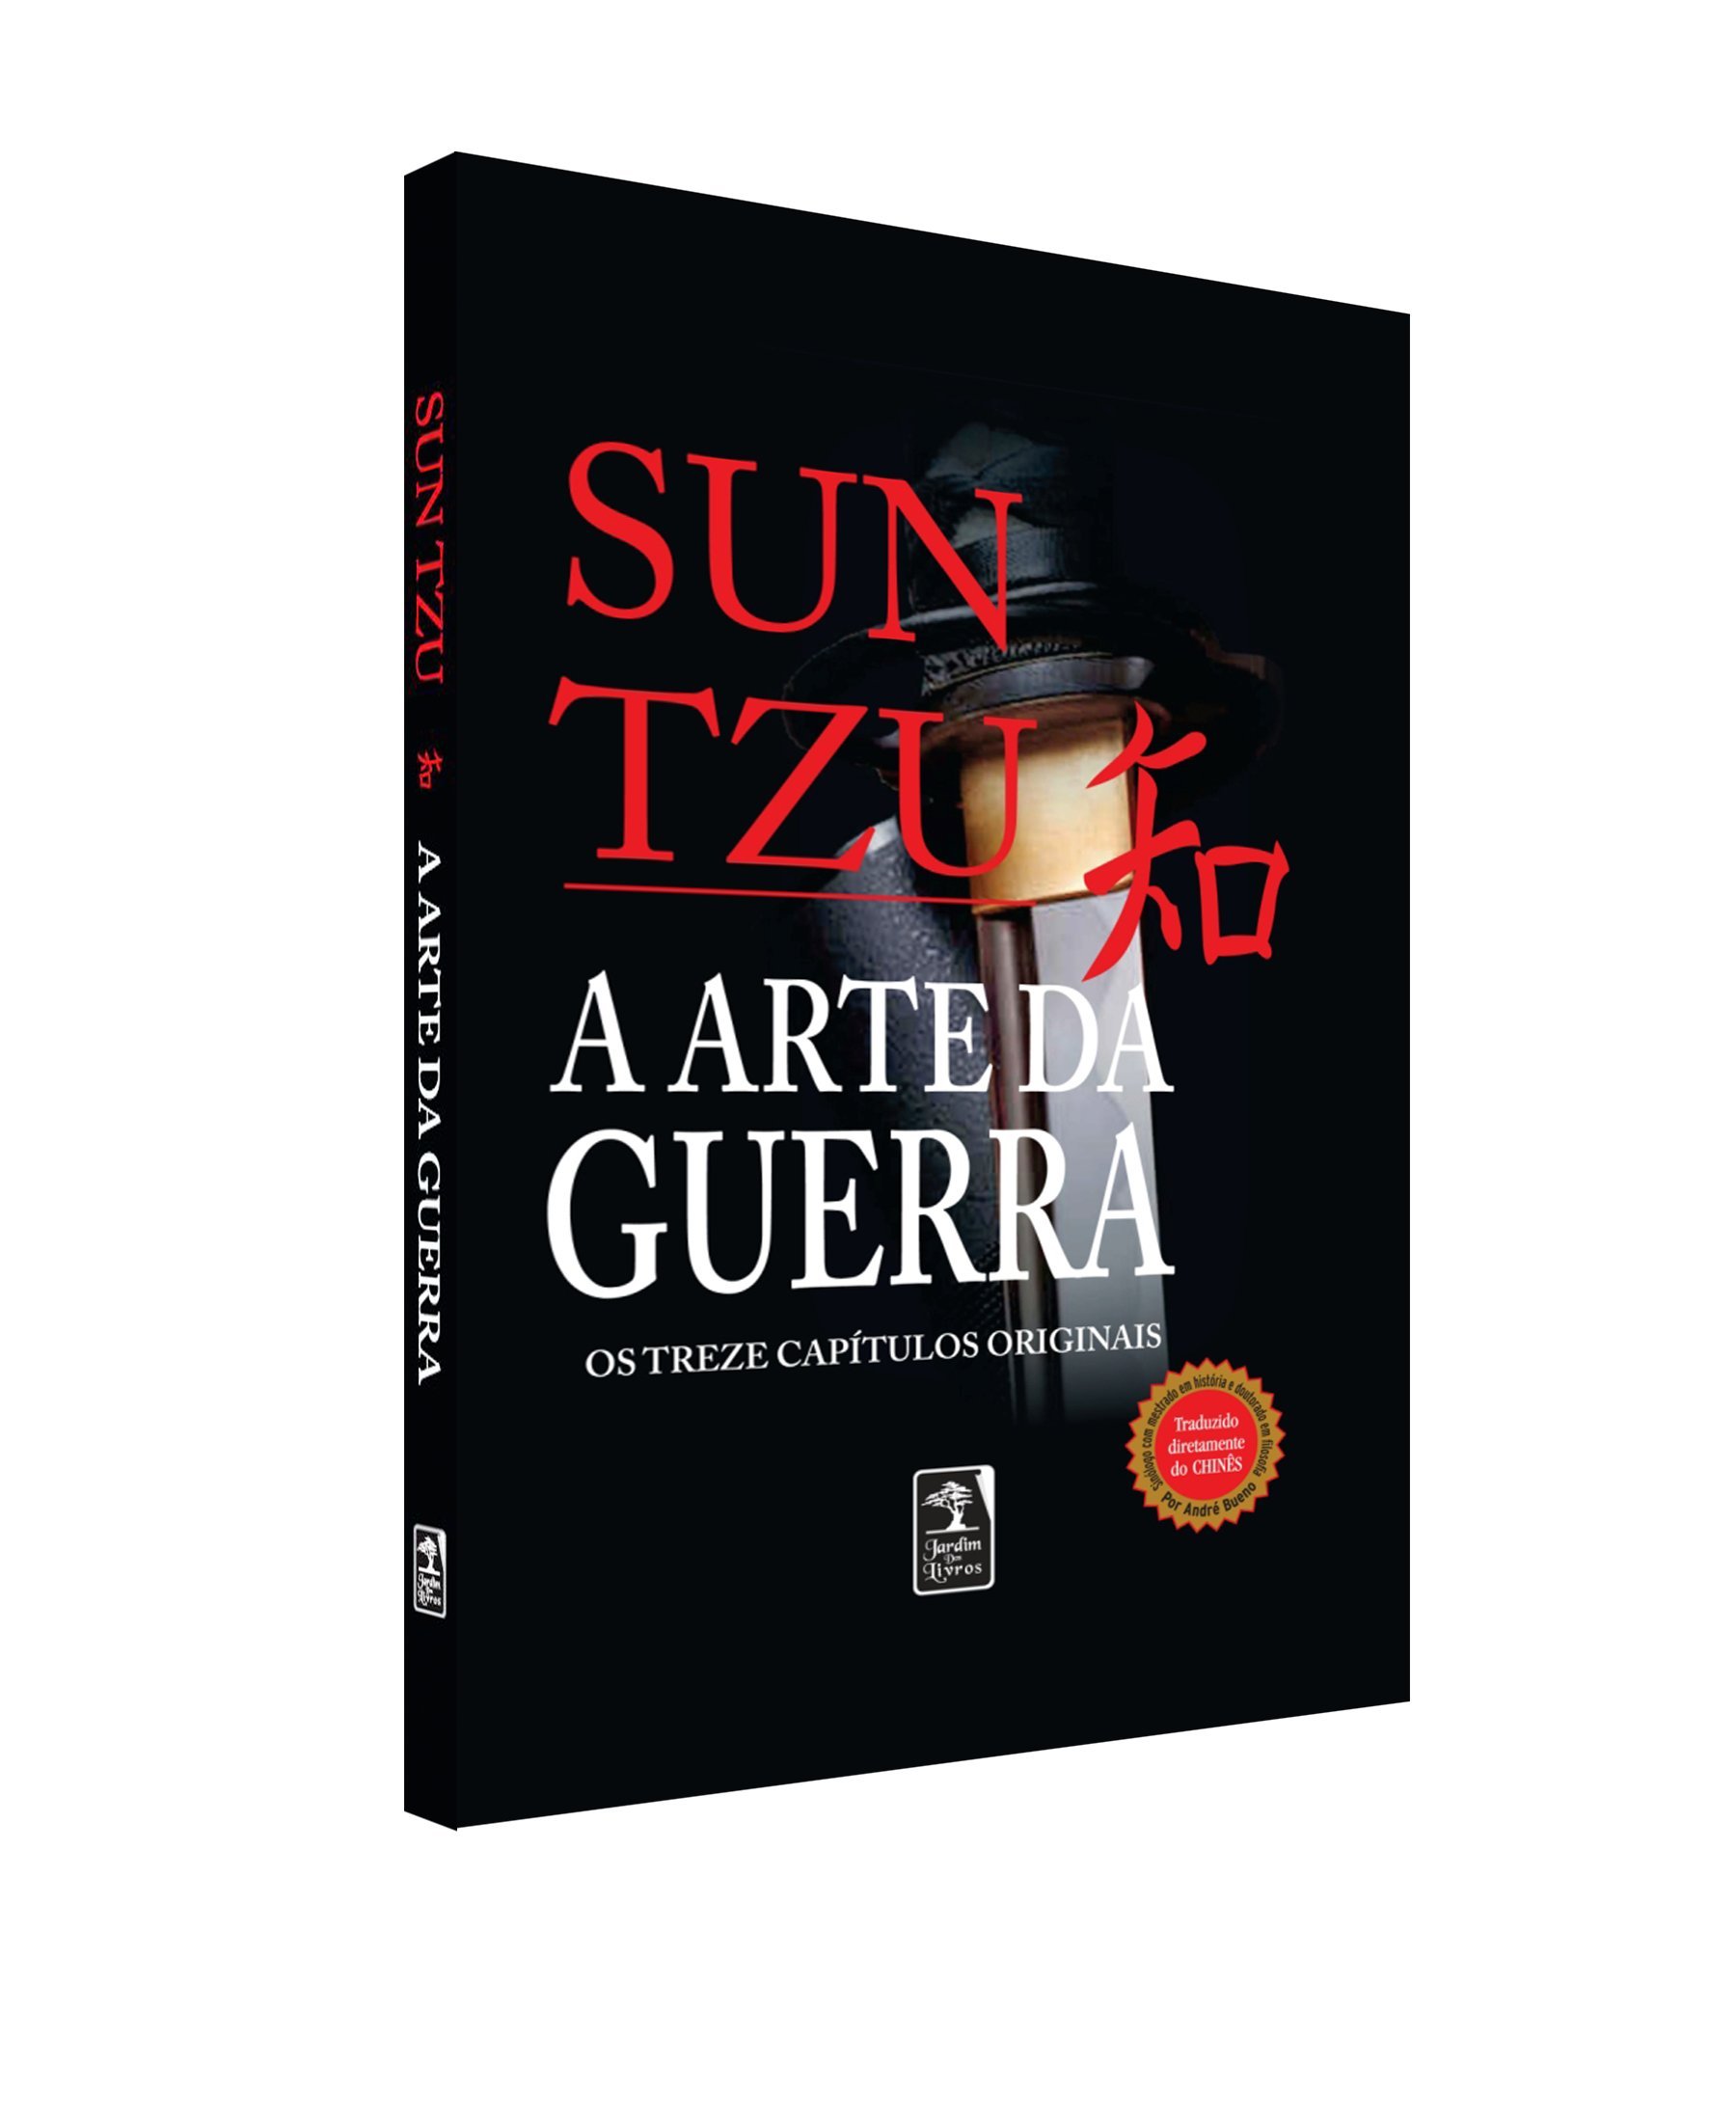 A Arte da guerra - Edição luxo (Portuguese Edition)